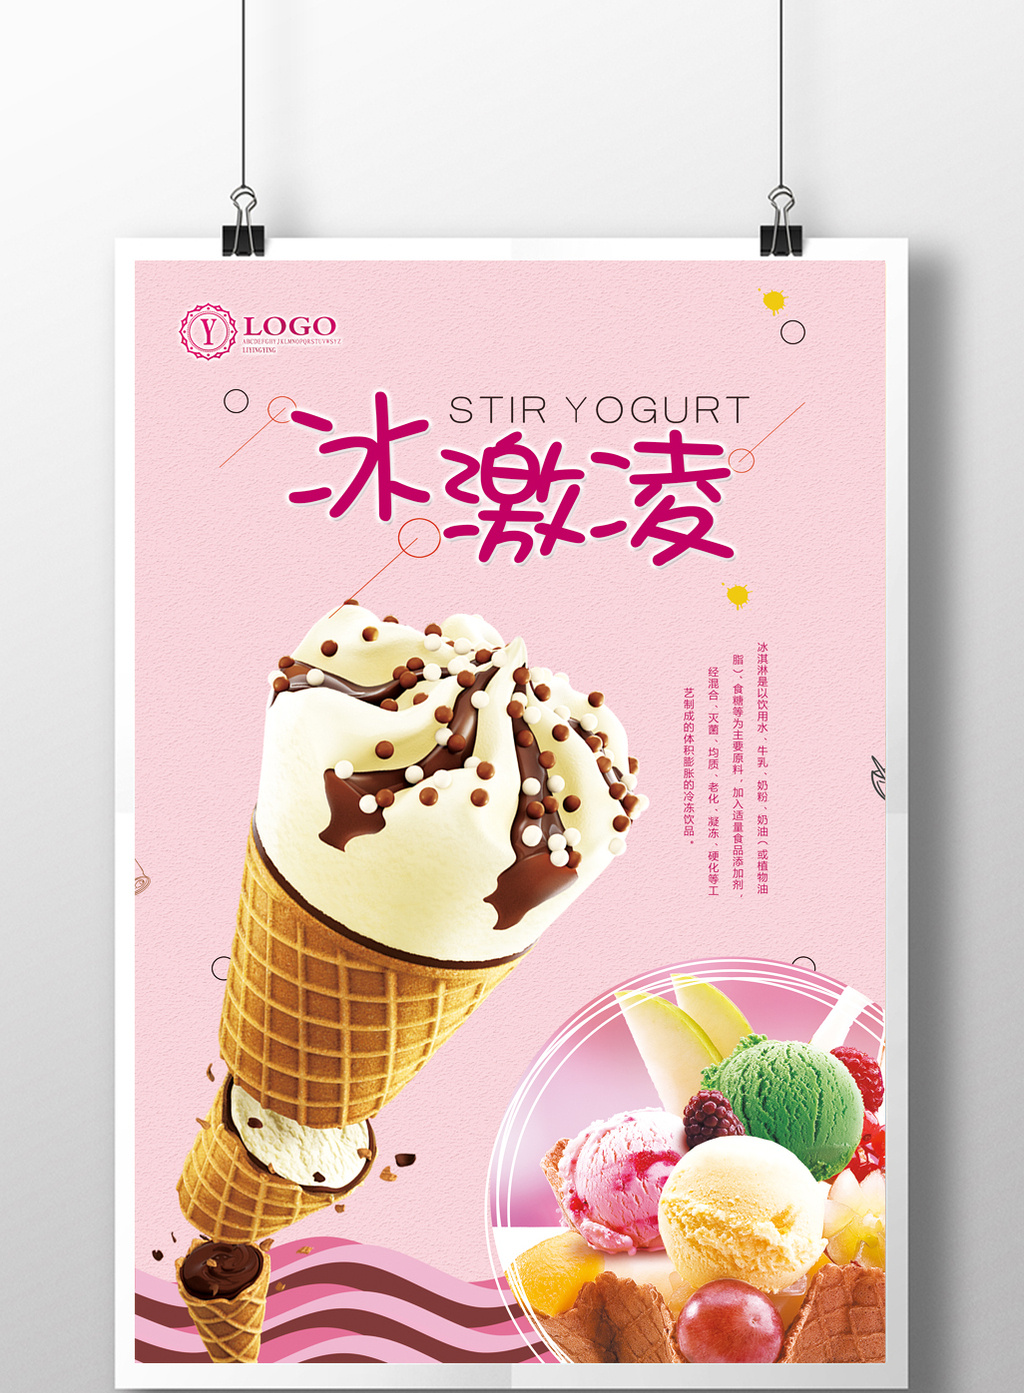 包图 广告设计 海报 > 美味冰激凌宣传海报设计  上传时间2017-07-17